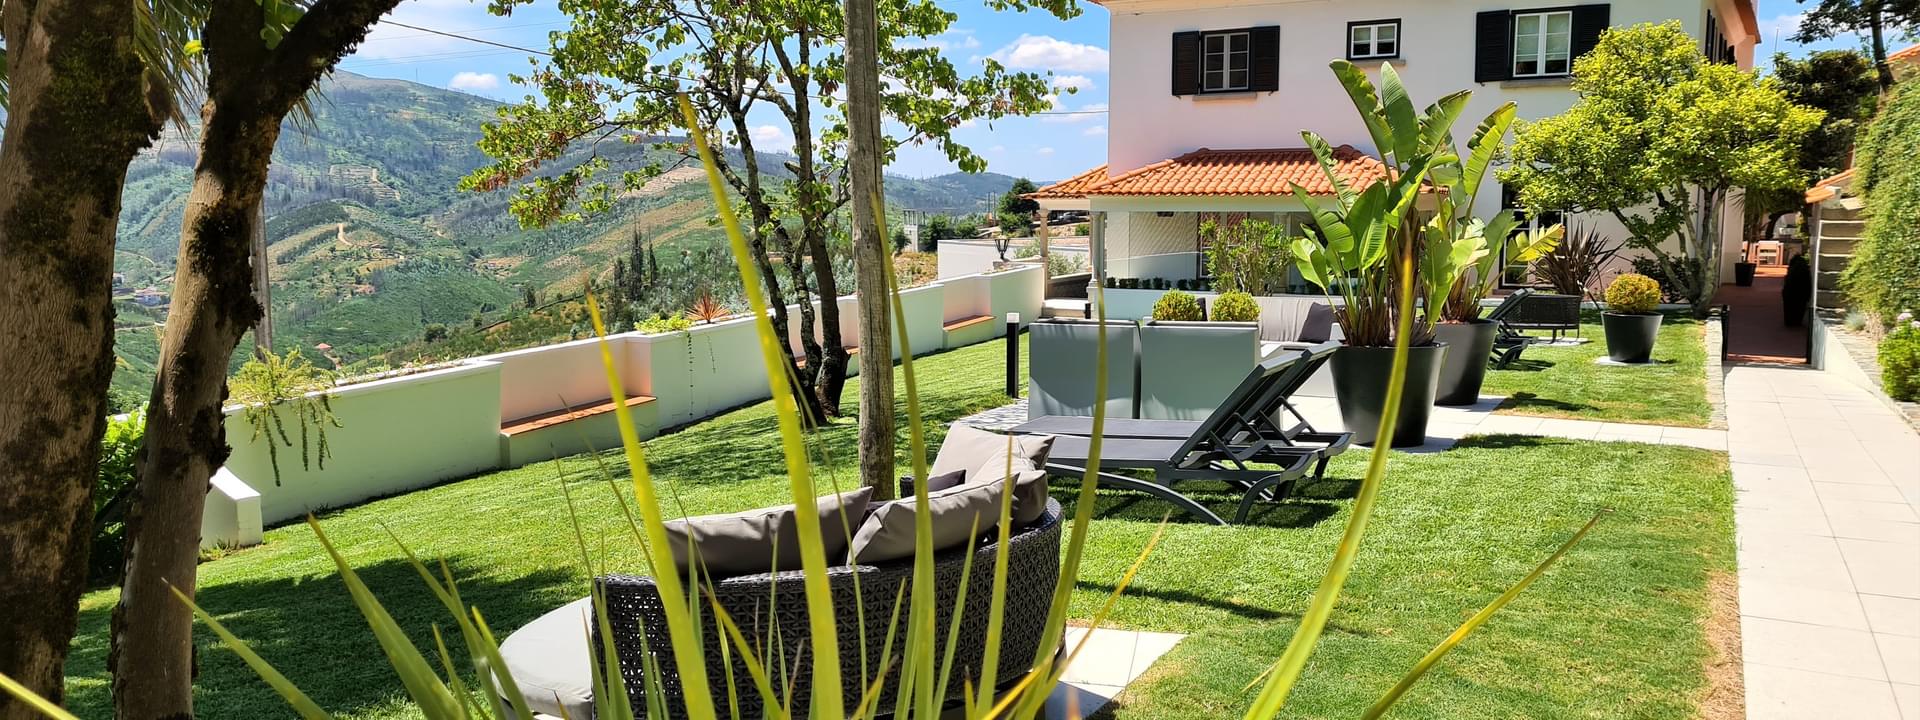 Quinta da Palmeira - Country House Retreat & Spa